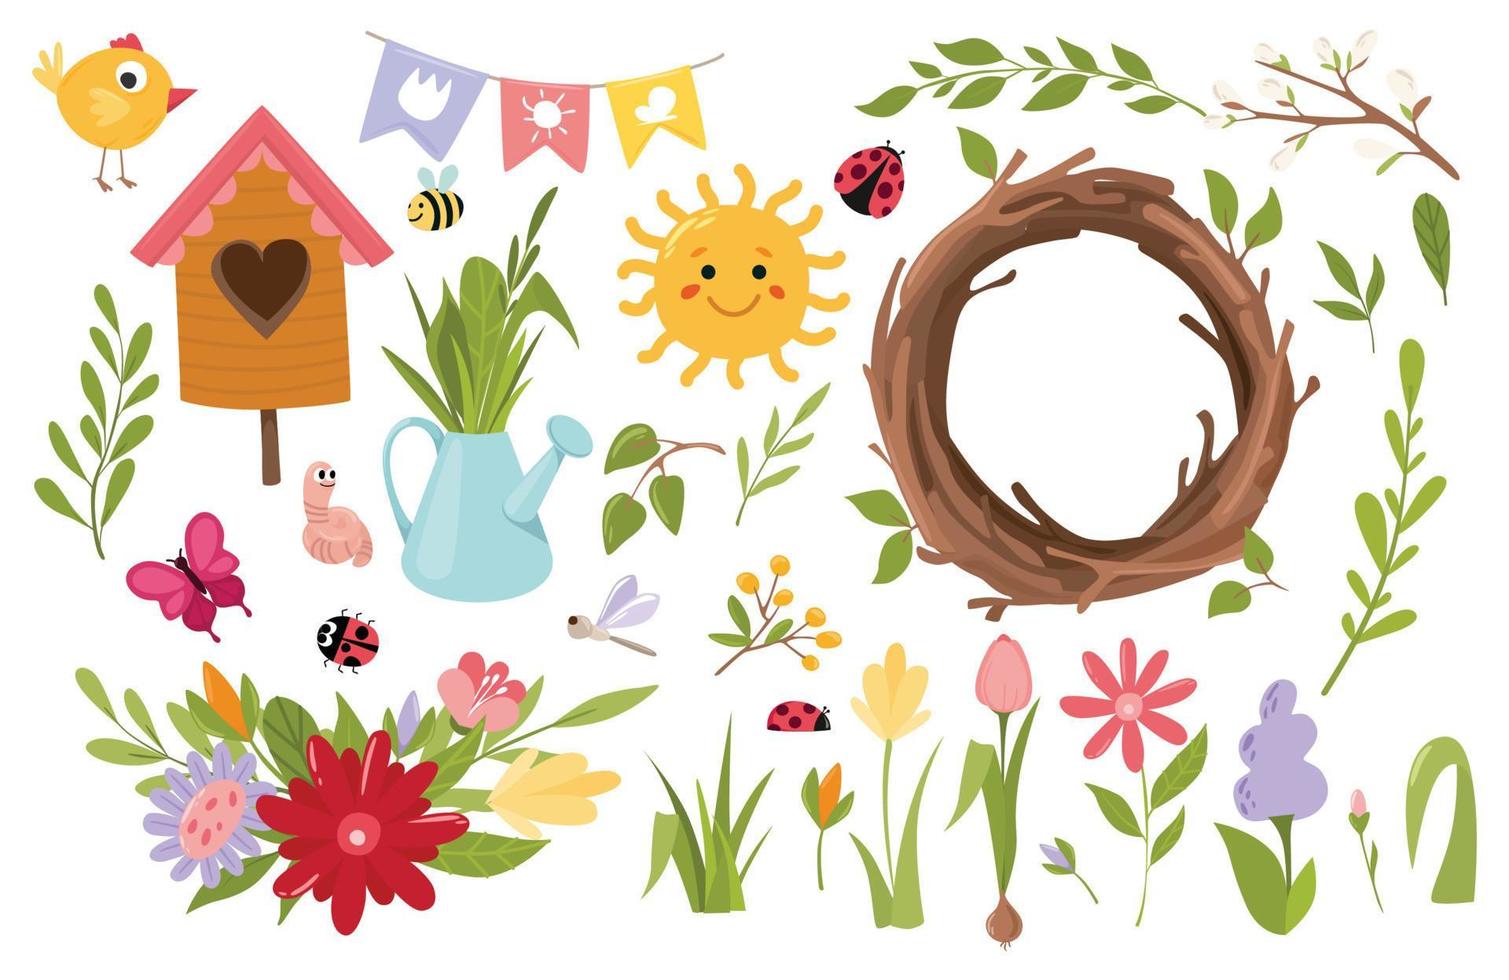 voorjaar set, voorjaar schattig voorjaar bloem boeket, vogel kransen, voor afdrukbare kaart, poster, label, label, uitnodiging, sticker, vector illustratie.